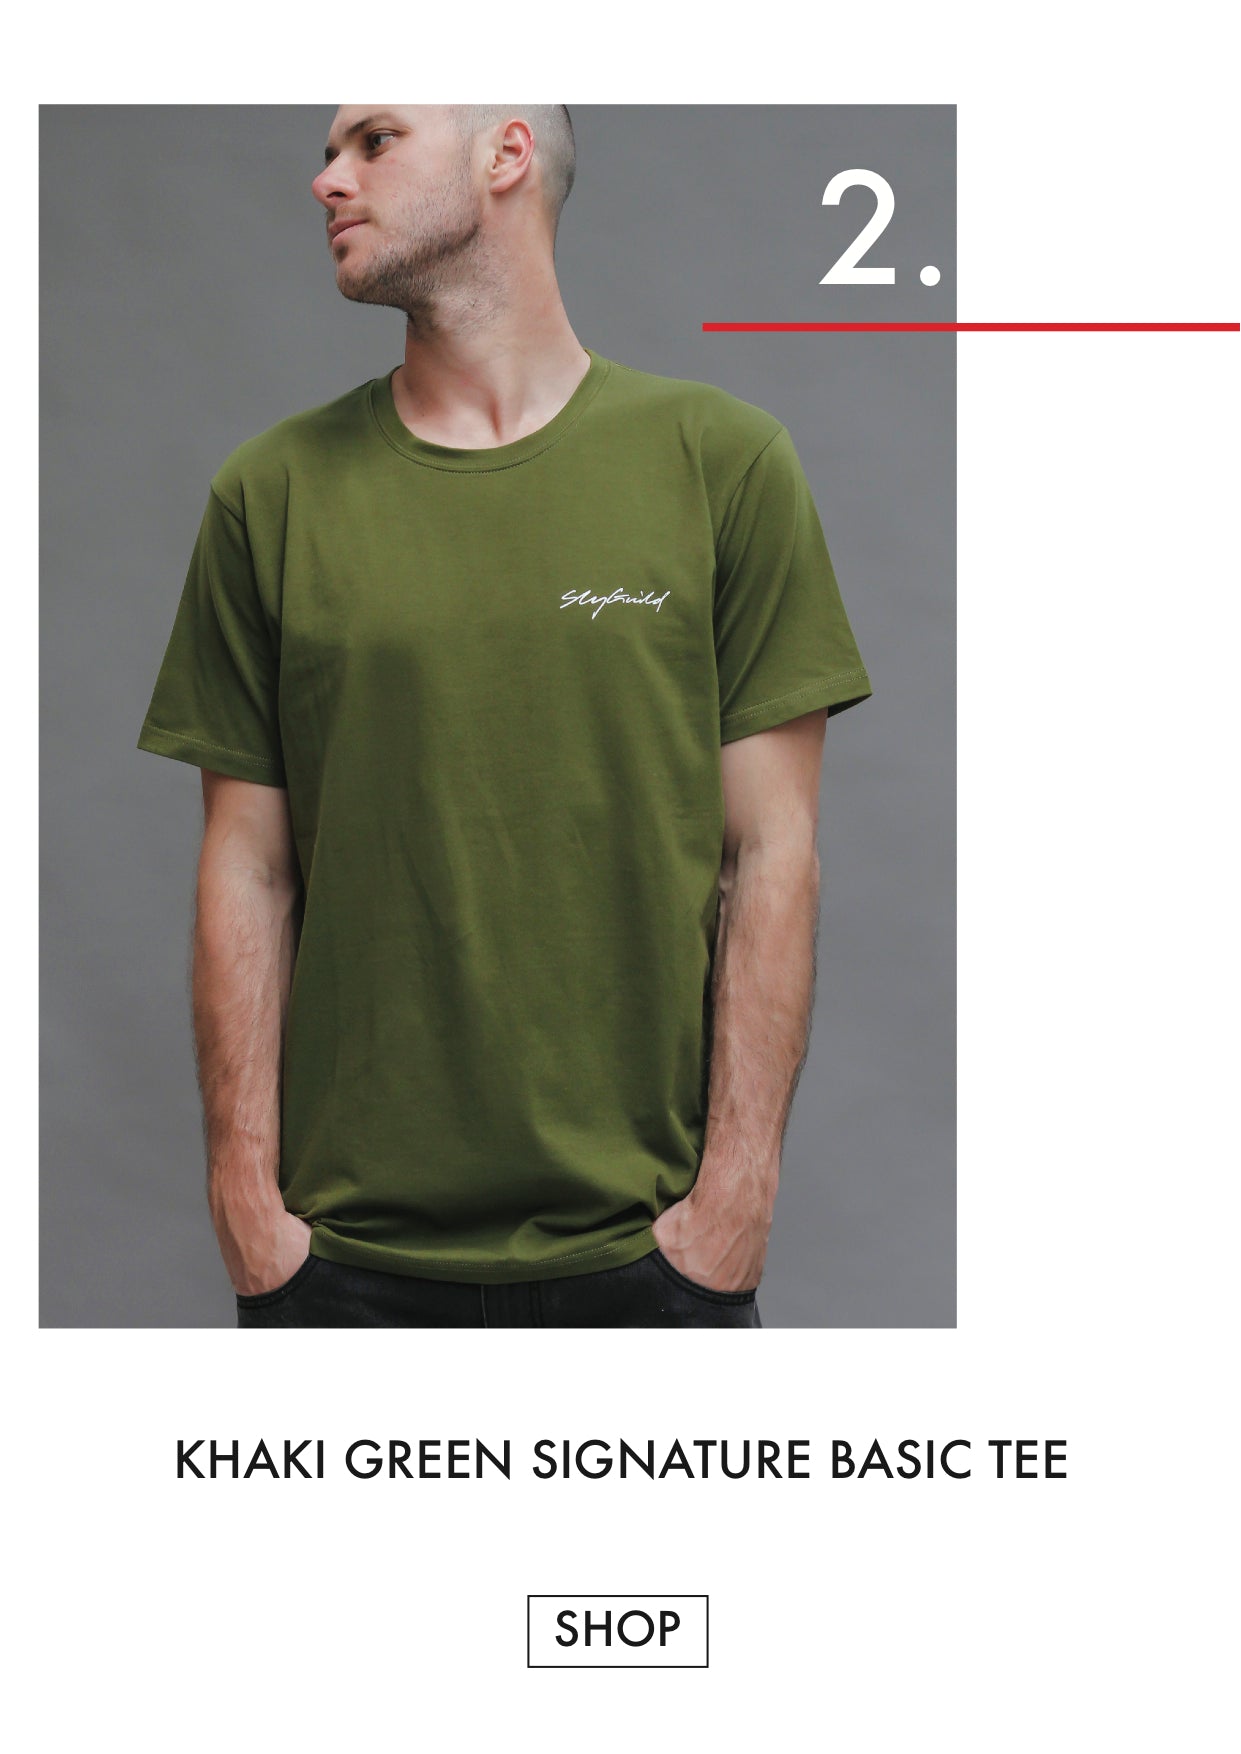 Khaki green tshirt